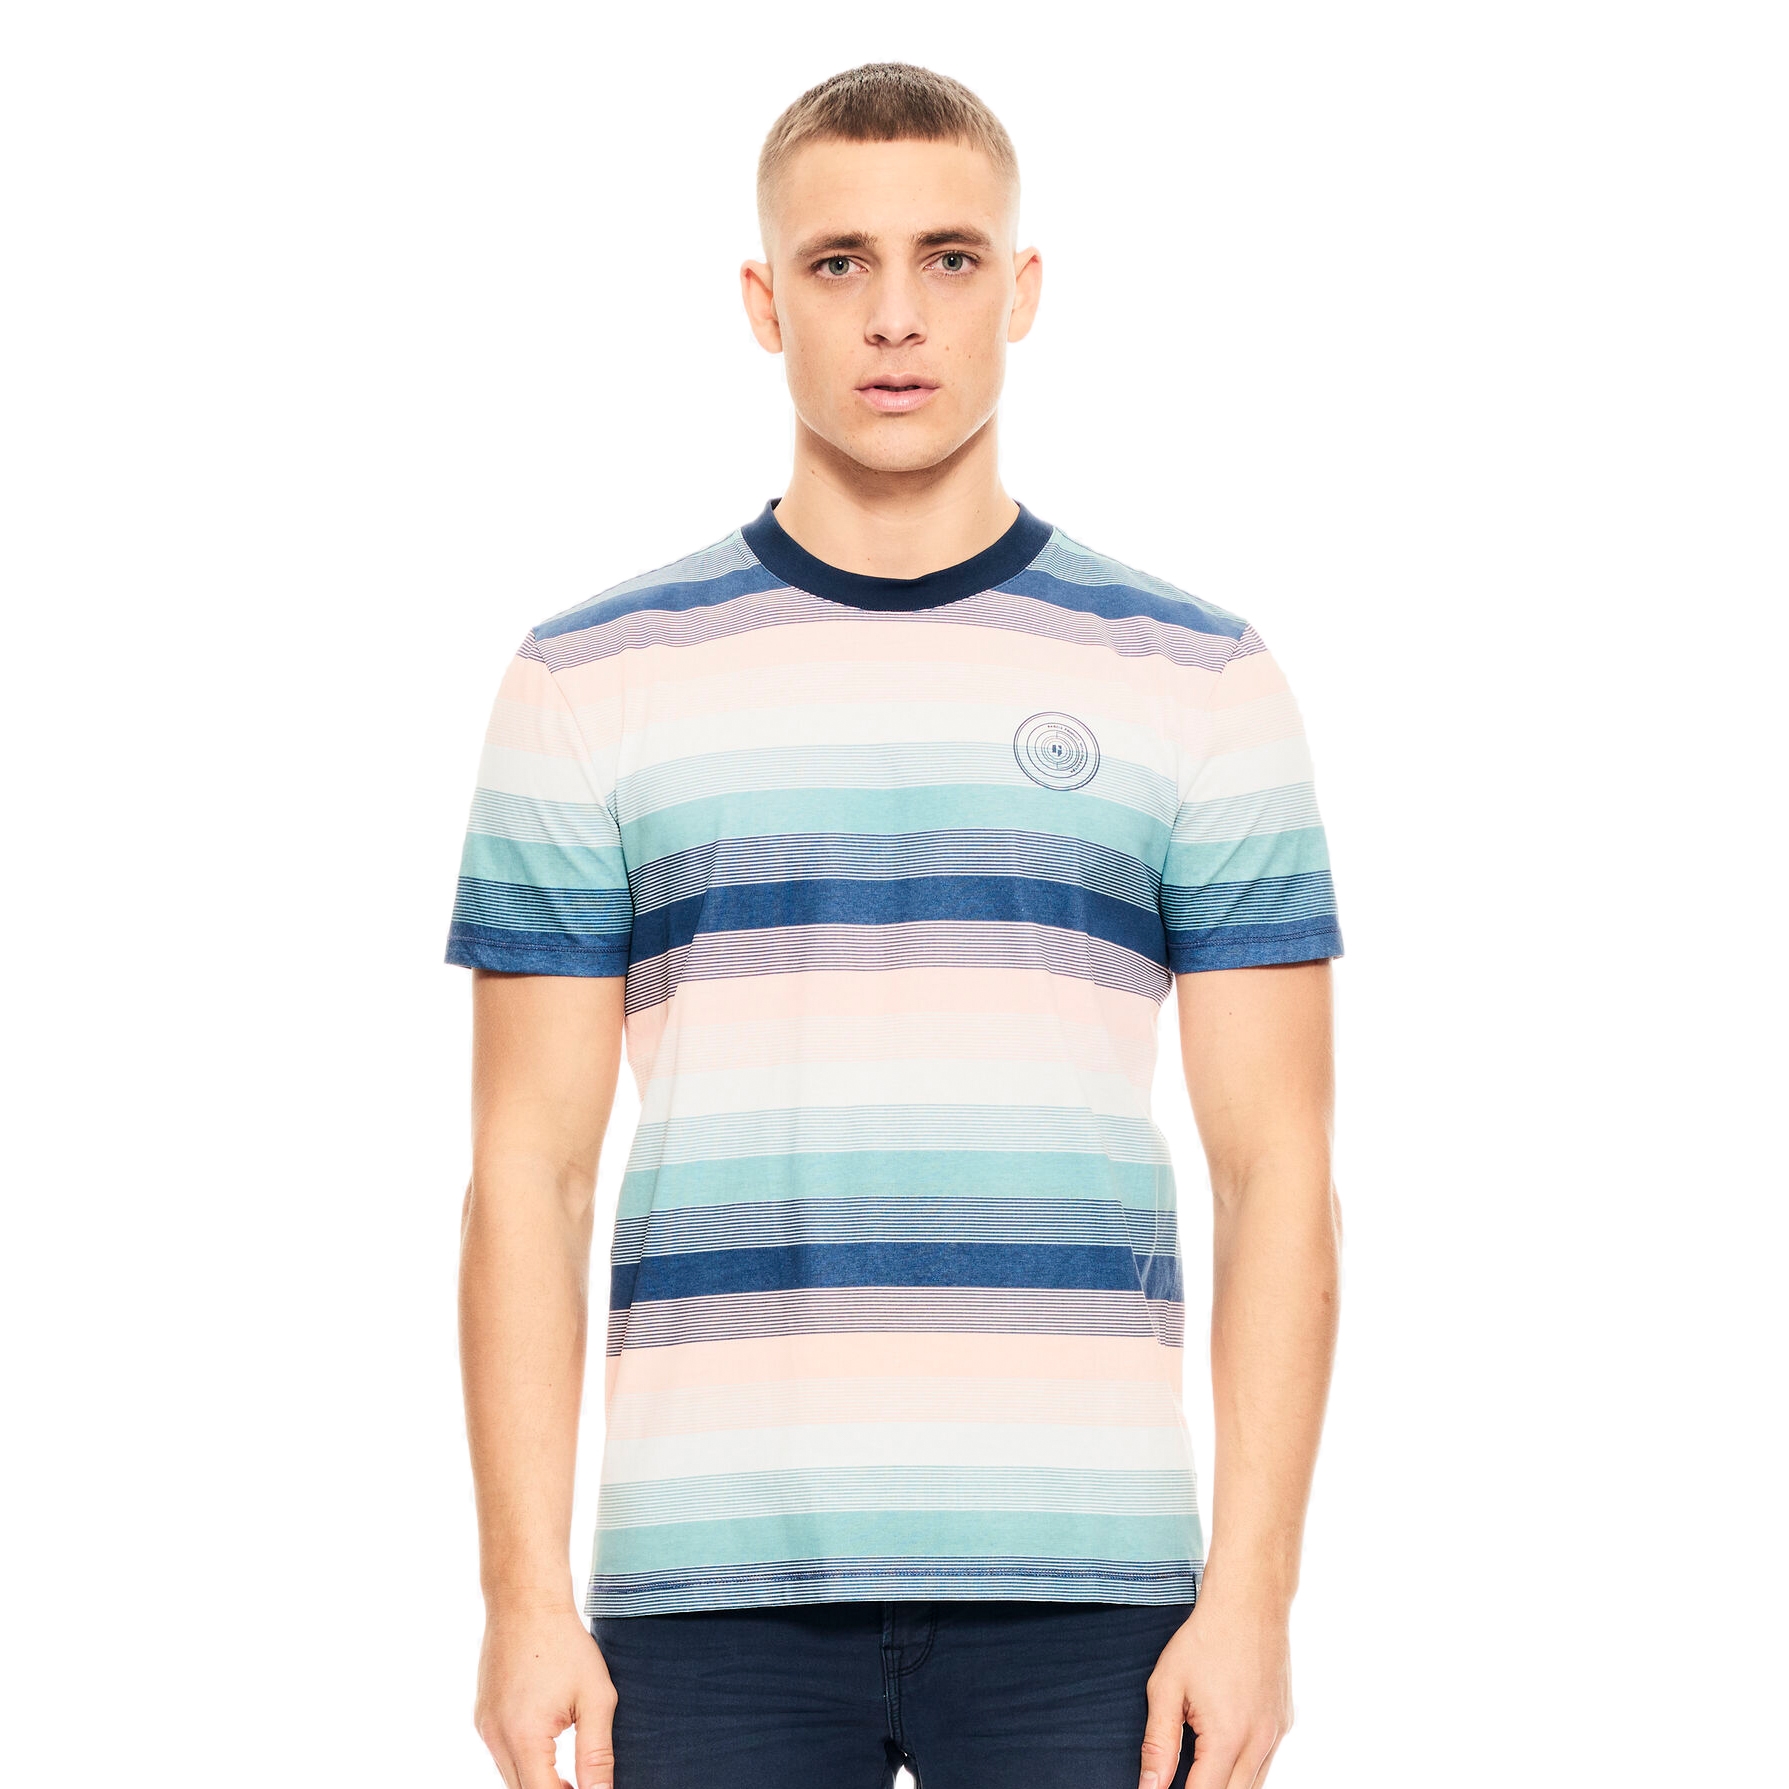 Garcia Herren T-Shirt Shirt kurzarm mehrfarbig gestreift E11005 4962 denim blue